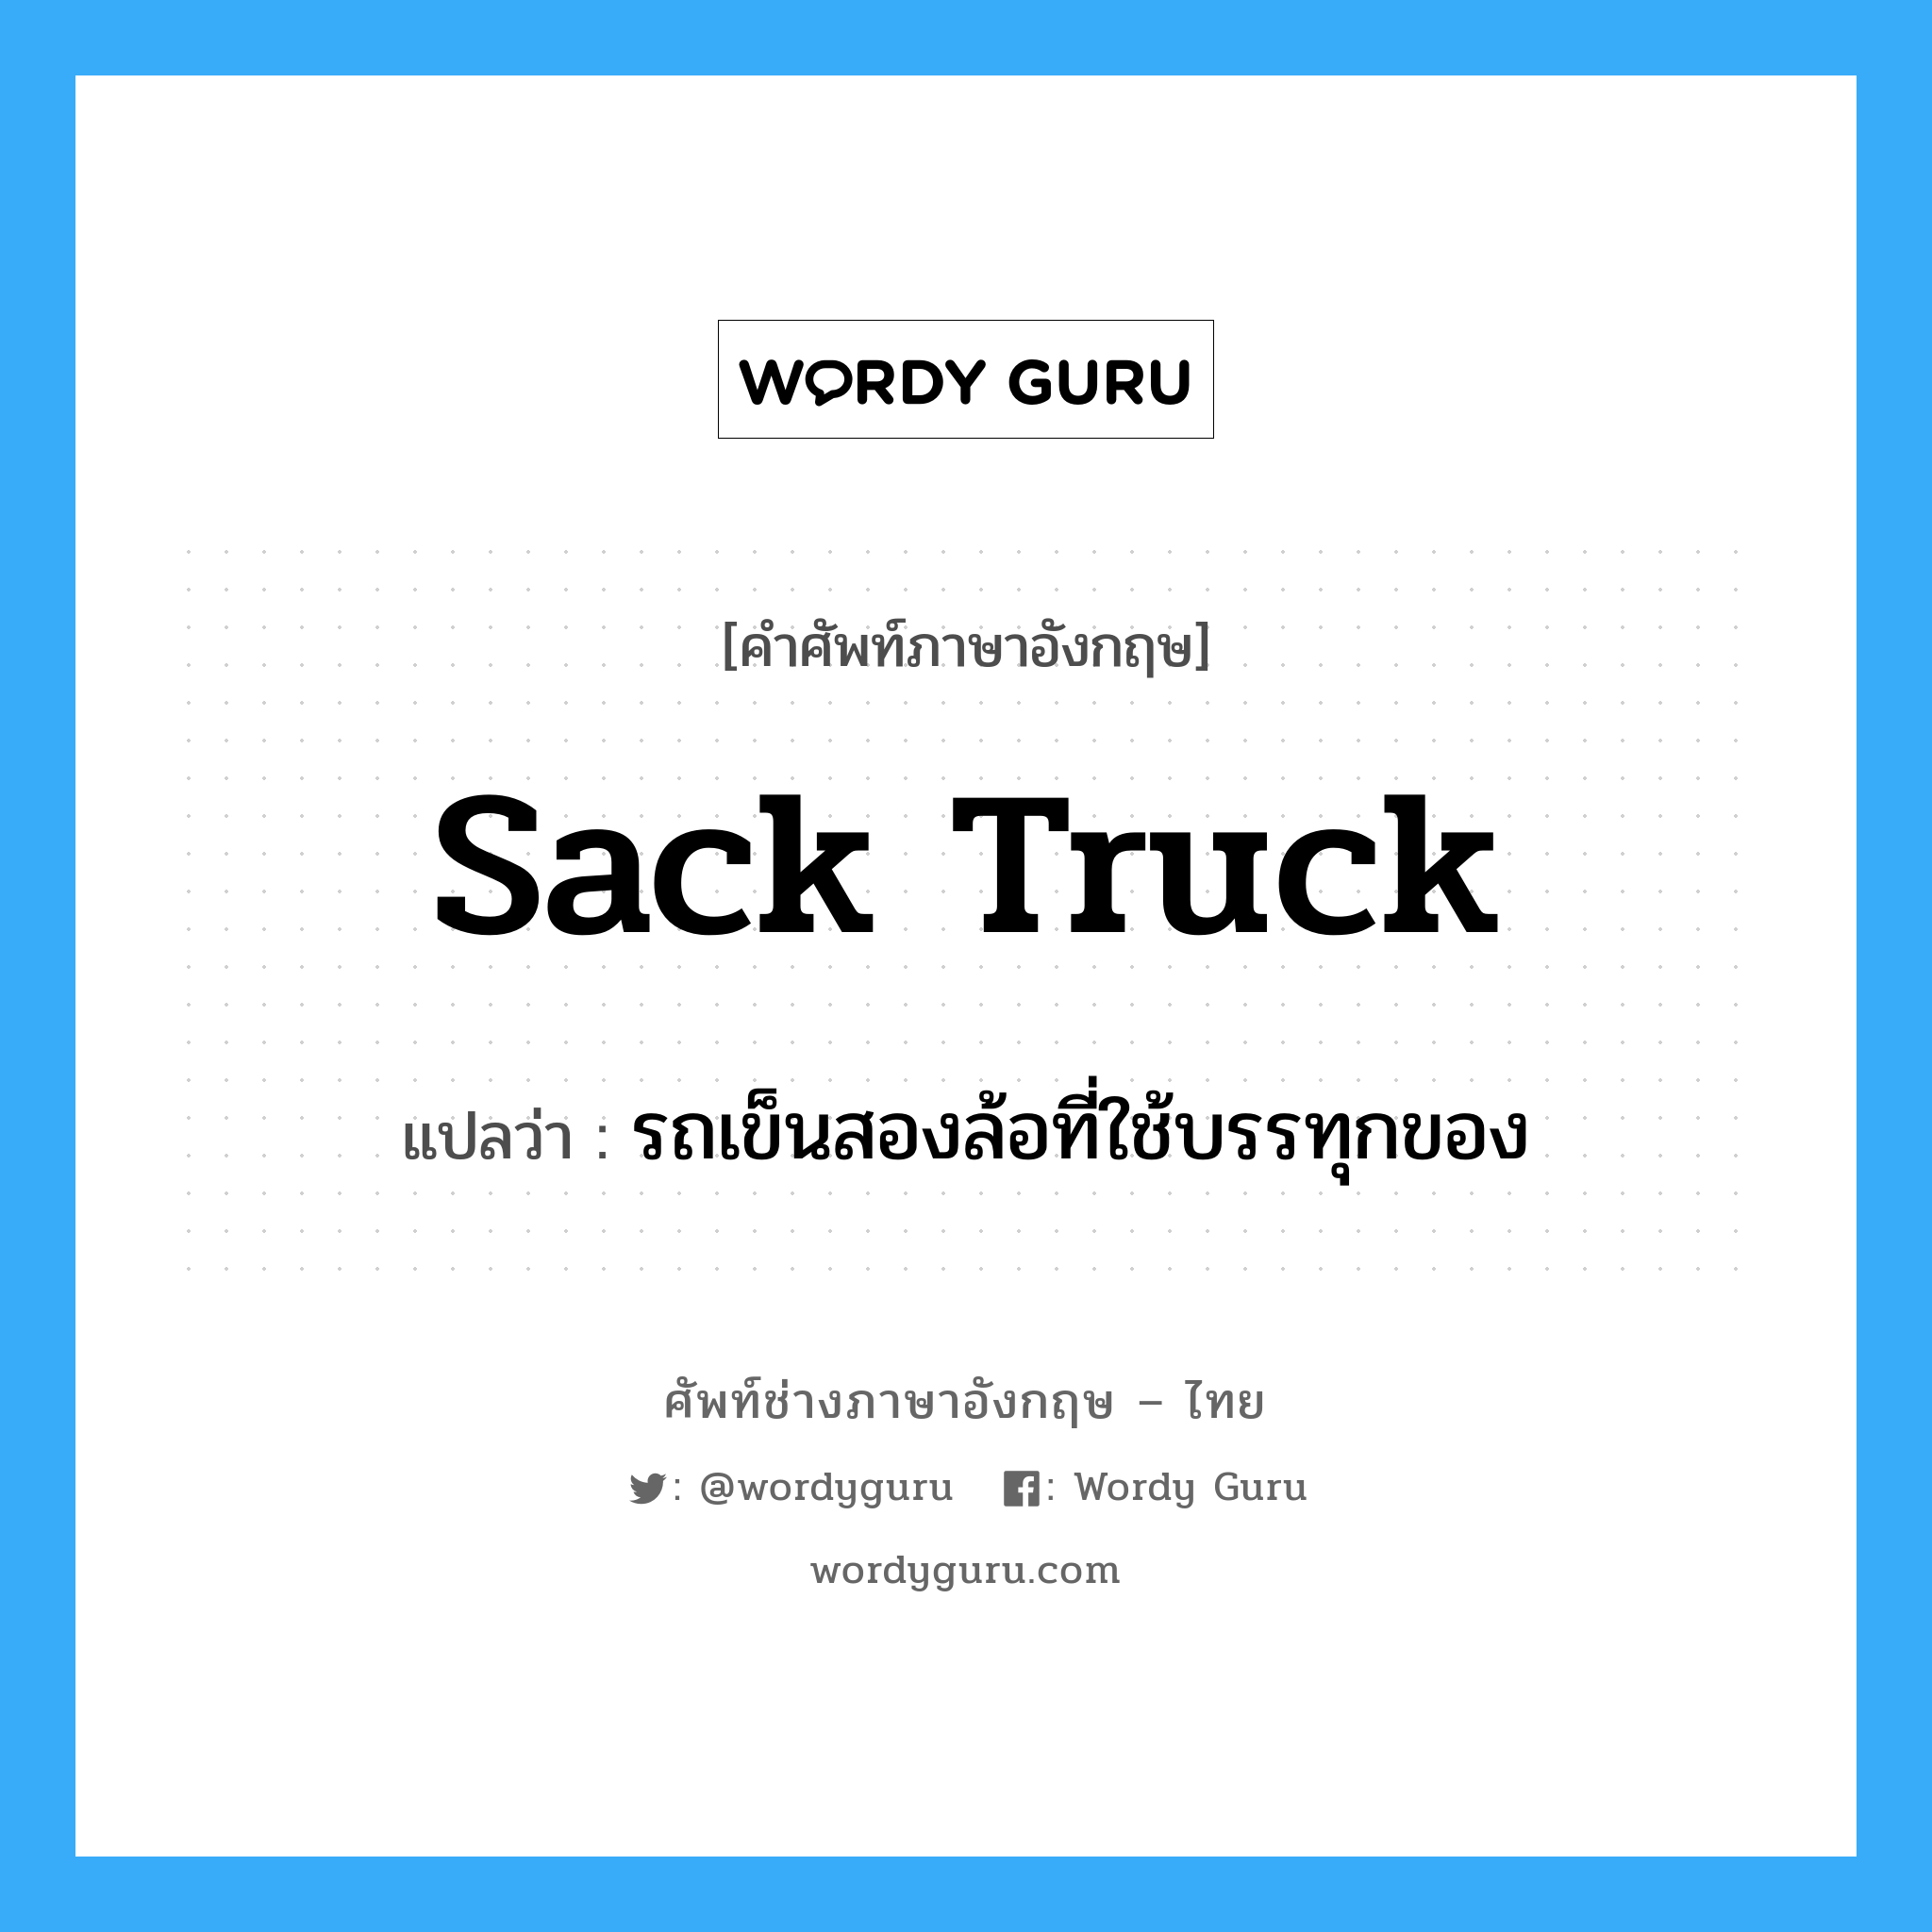 รถเข็นสองล้อที่ใช้บรรทุกของ ภาษาอังกฤษ?, คำศัพท์ช่างภาษาอังกฤษ - ไทย รถเข็นสองล้อที่ใช้บรรทุกของ คำศัพท์ภาษาอังกฤษ รถเข็นสองล้อที่ใช้บรรทุกของ แปลว่า sack truck